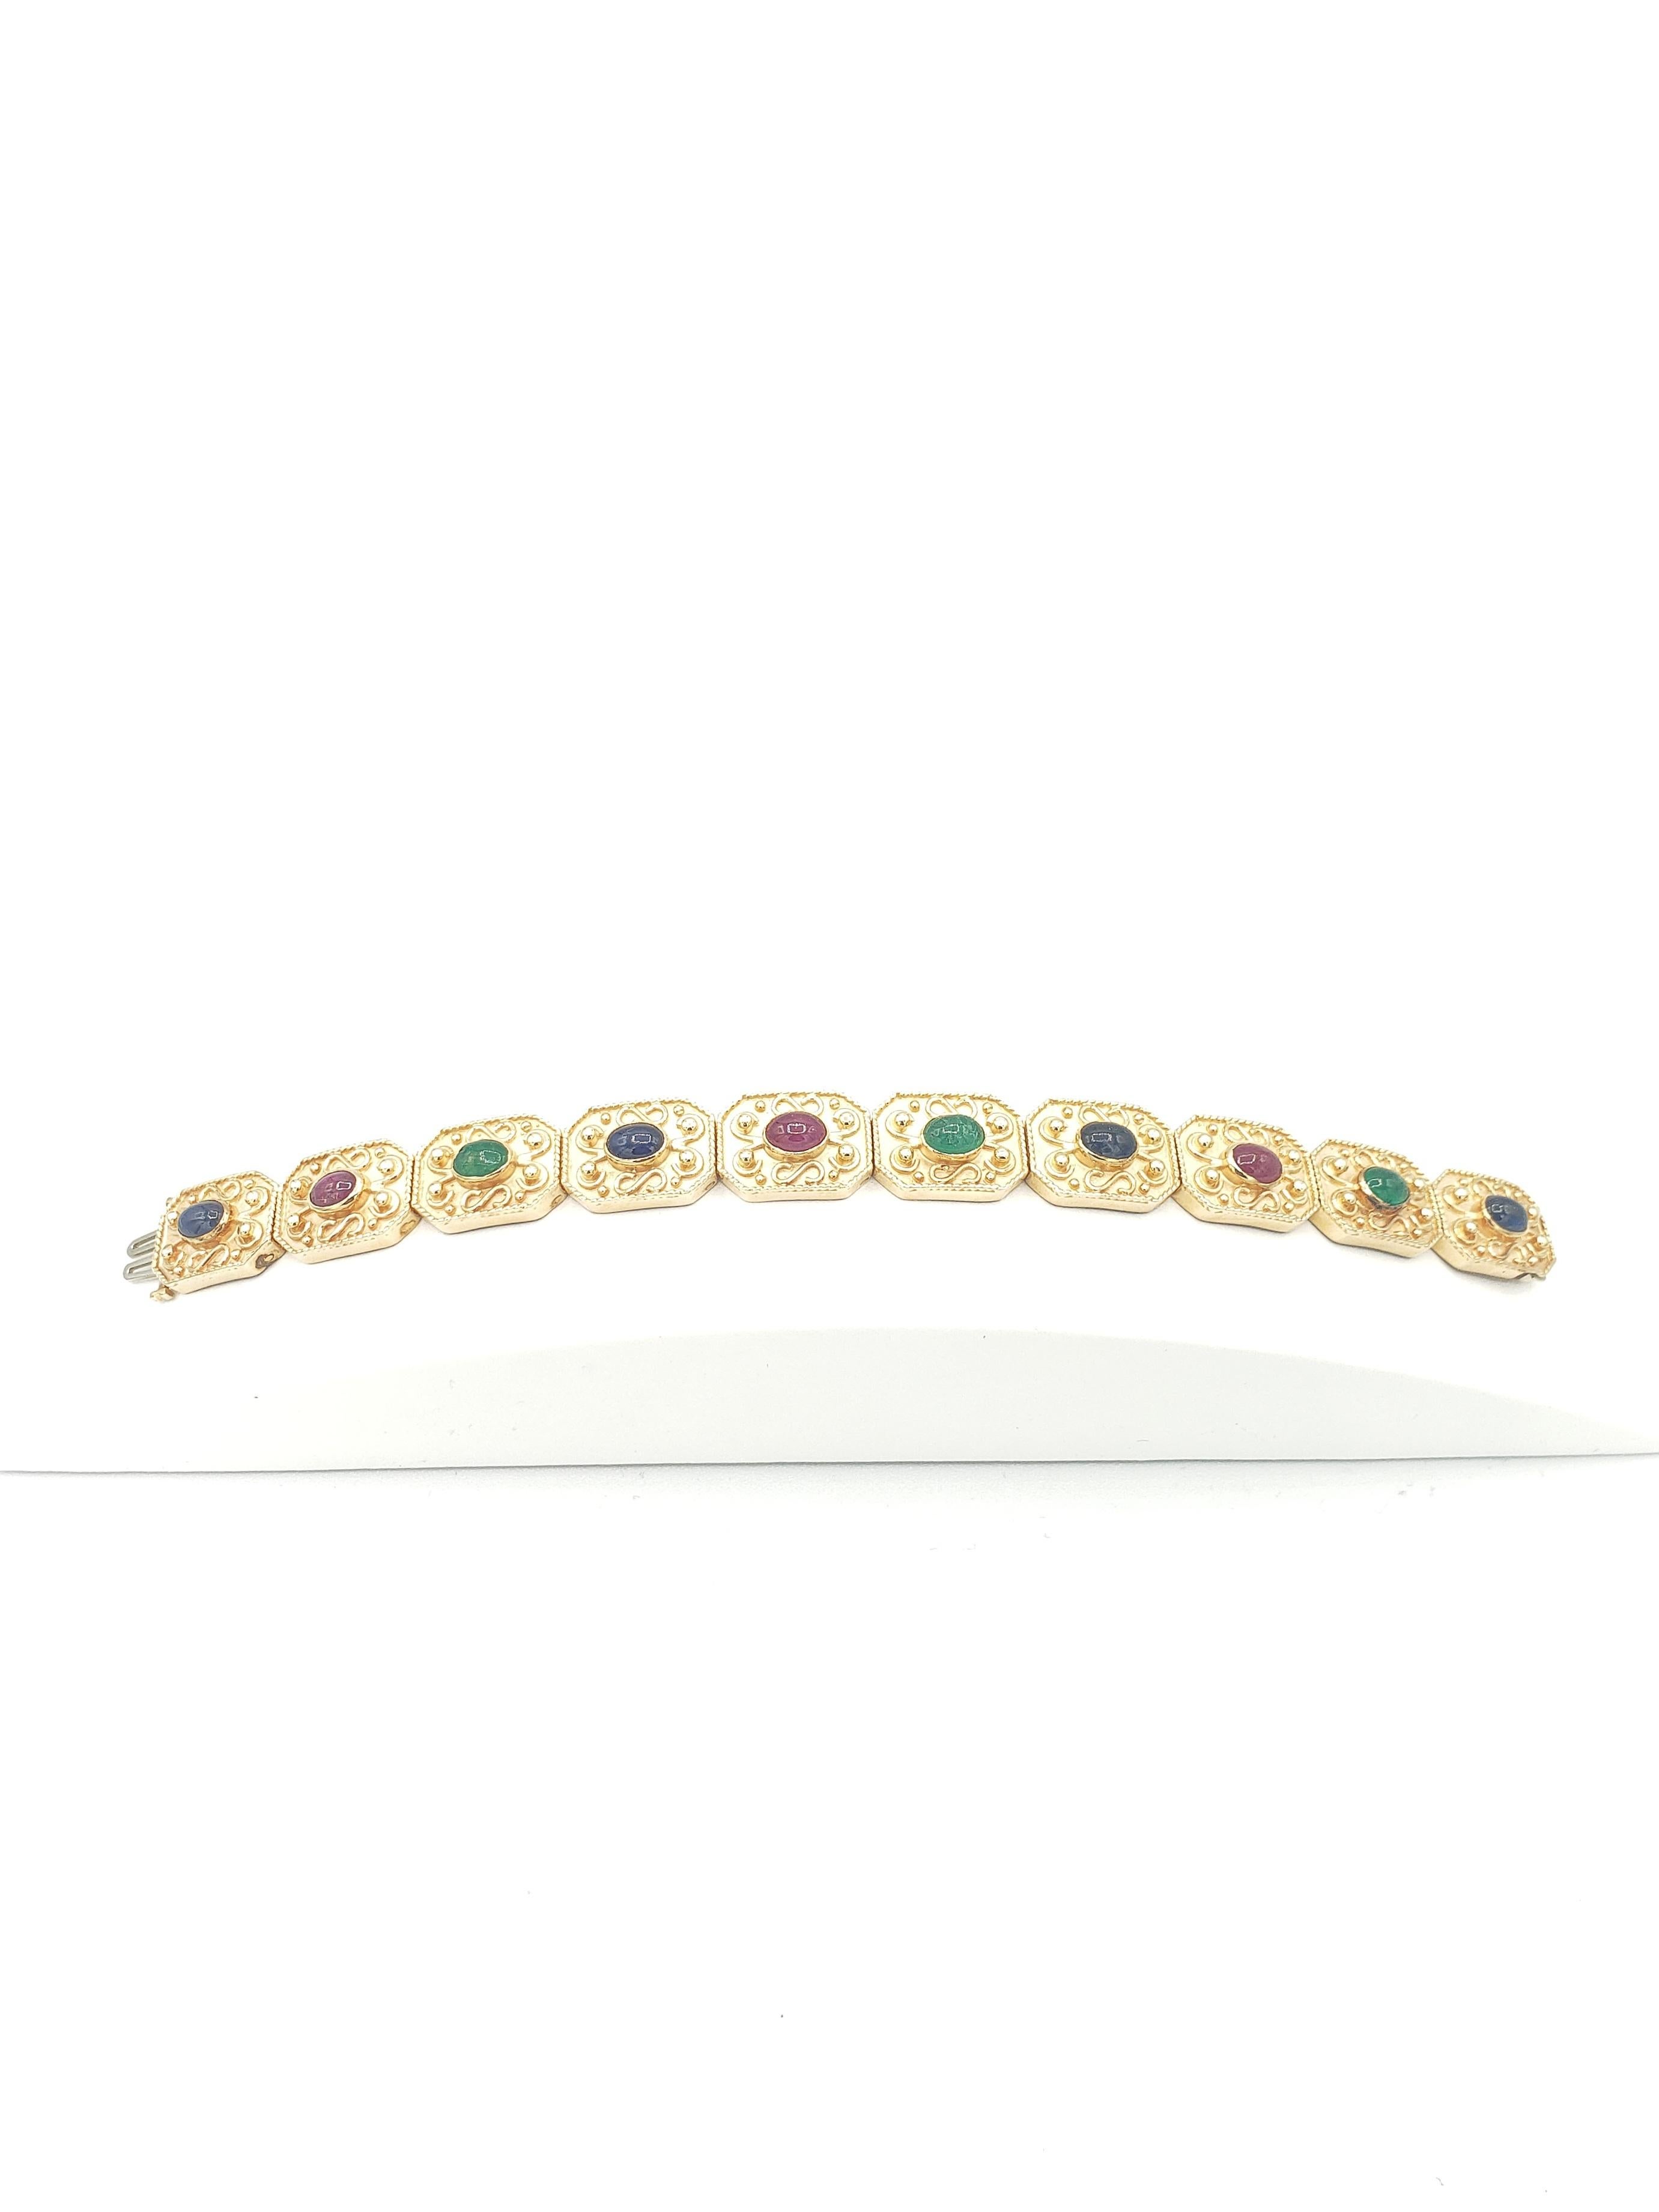 Ce magnifique bracelet de LaFrancee est un bijou époustouflant qui met en valeur des pierres précieuses naturelles comme le rubis, le saphir et l'émeraude dans une monture en or jaune massif 14k. Le style byzantin ajoute une touche d'élégance et de